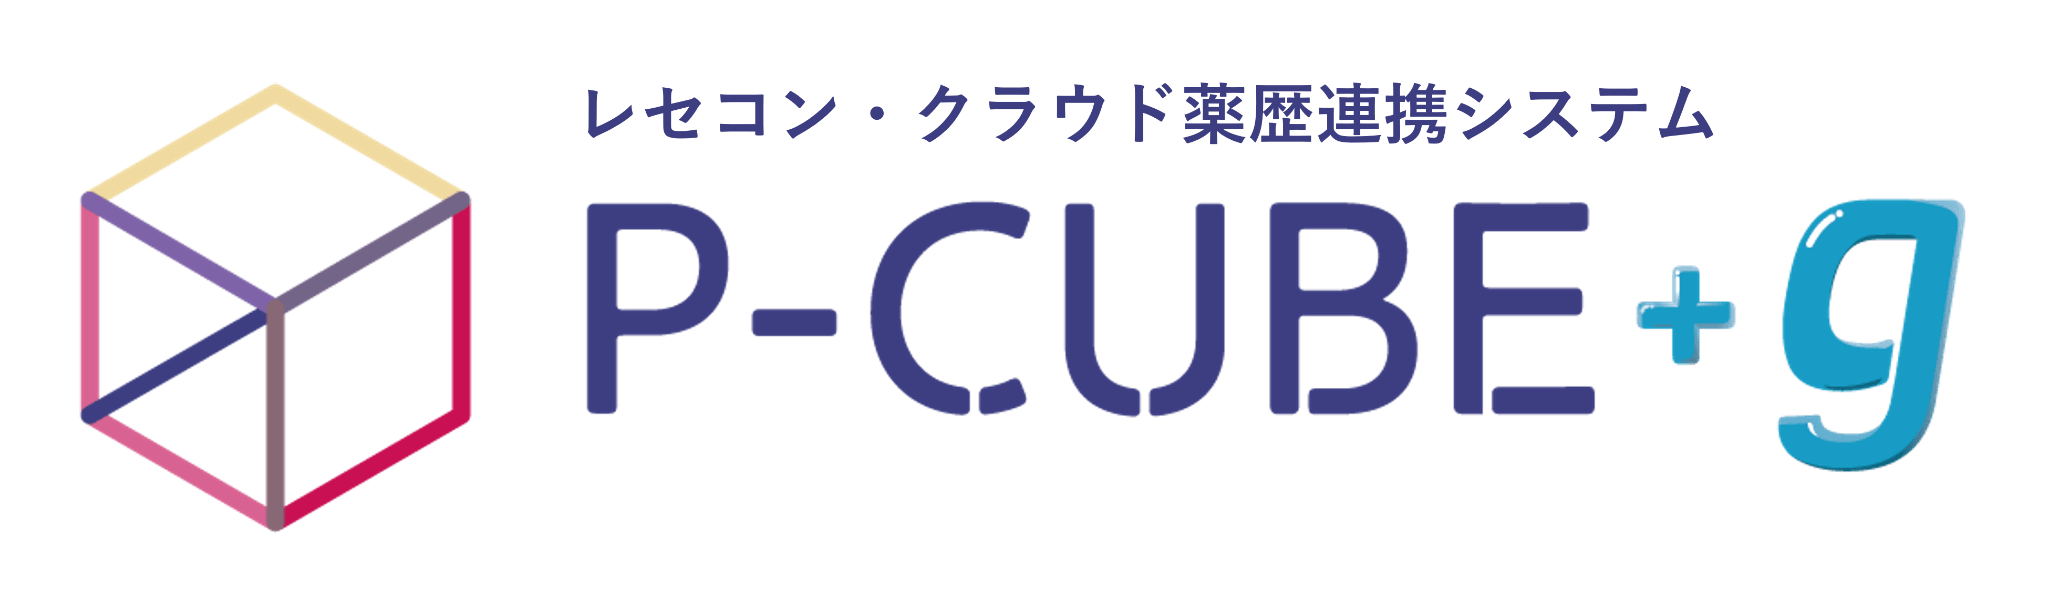 レセコン・クラウド薬歴連携システム『P-CUBE+g』ロゴ